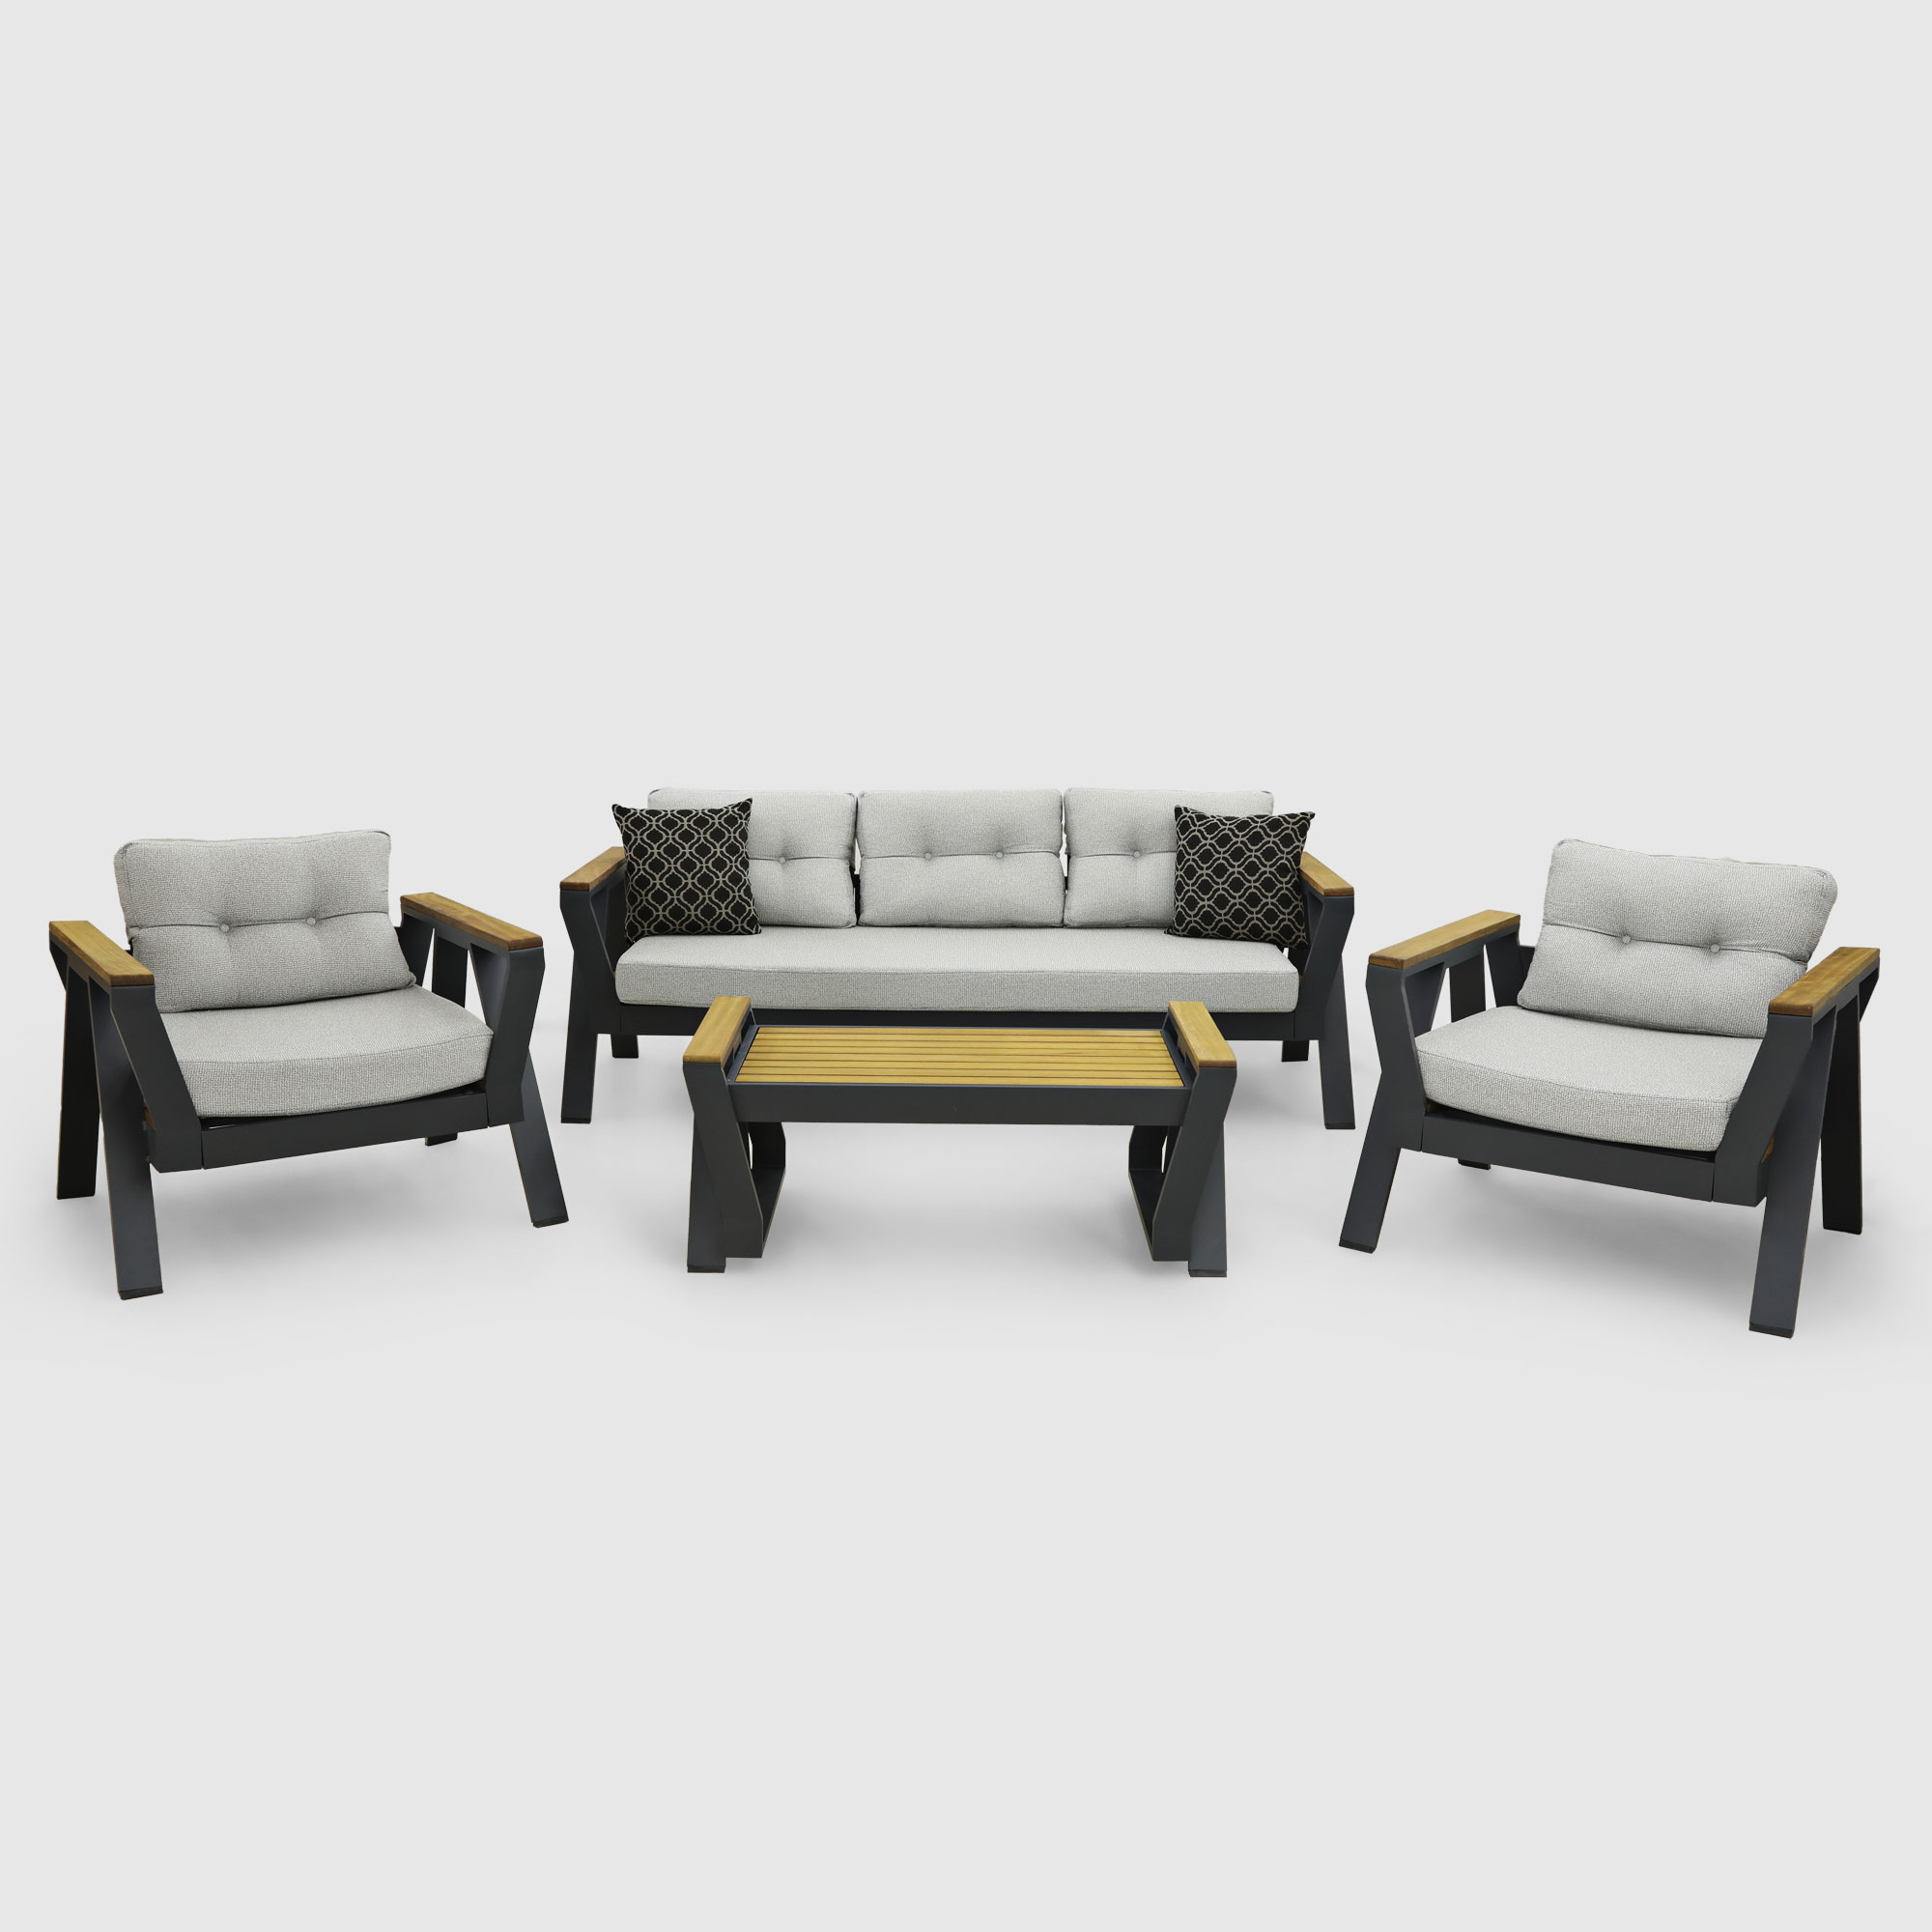 Комплект мебели Alora Garden Atlas 4 предмета, цвет антрацитовый, размер 192х80х55